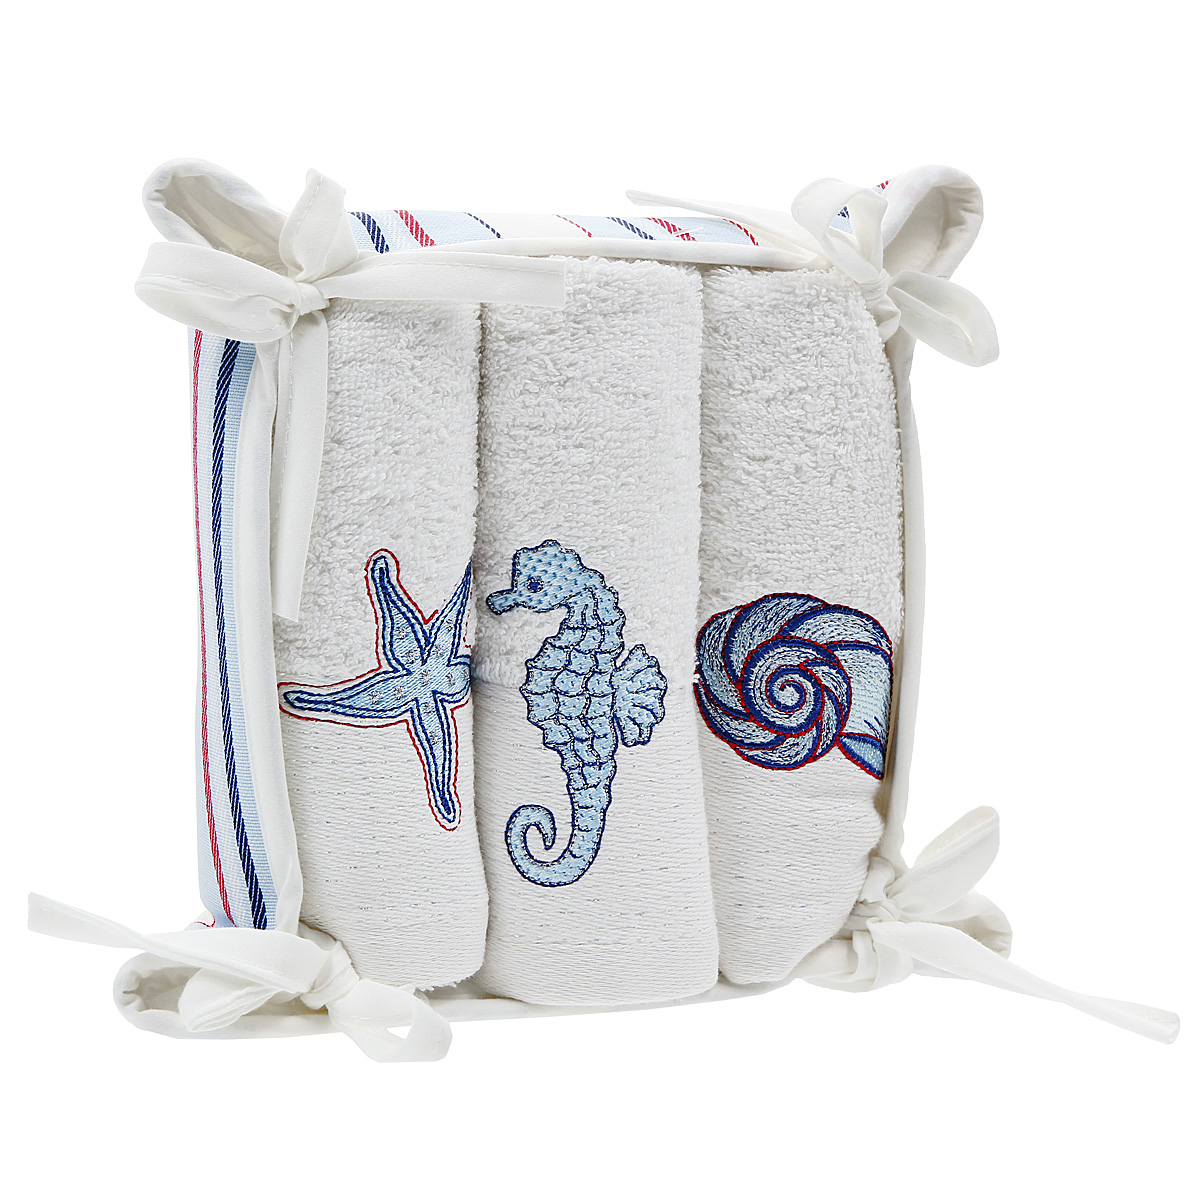 Озон полотенца для ванной. Набор банных полотенец. Полотенца с морской тематикой. Махровые полотенца морской тематики. Детские наборы банные полотенца.